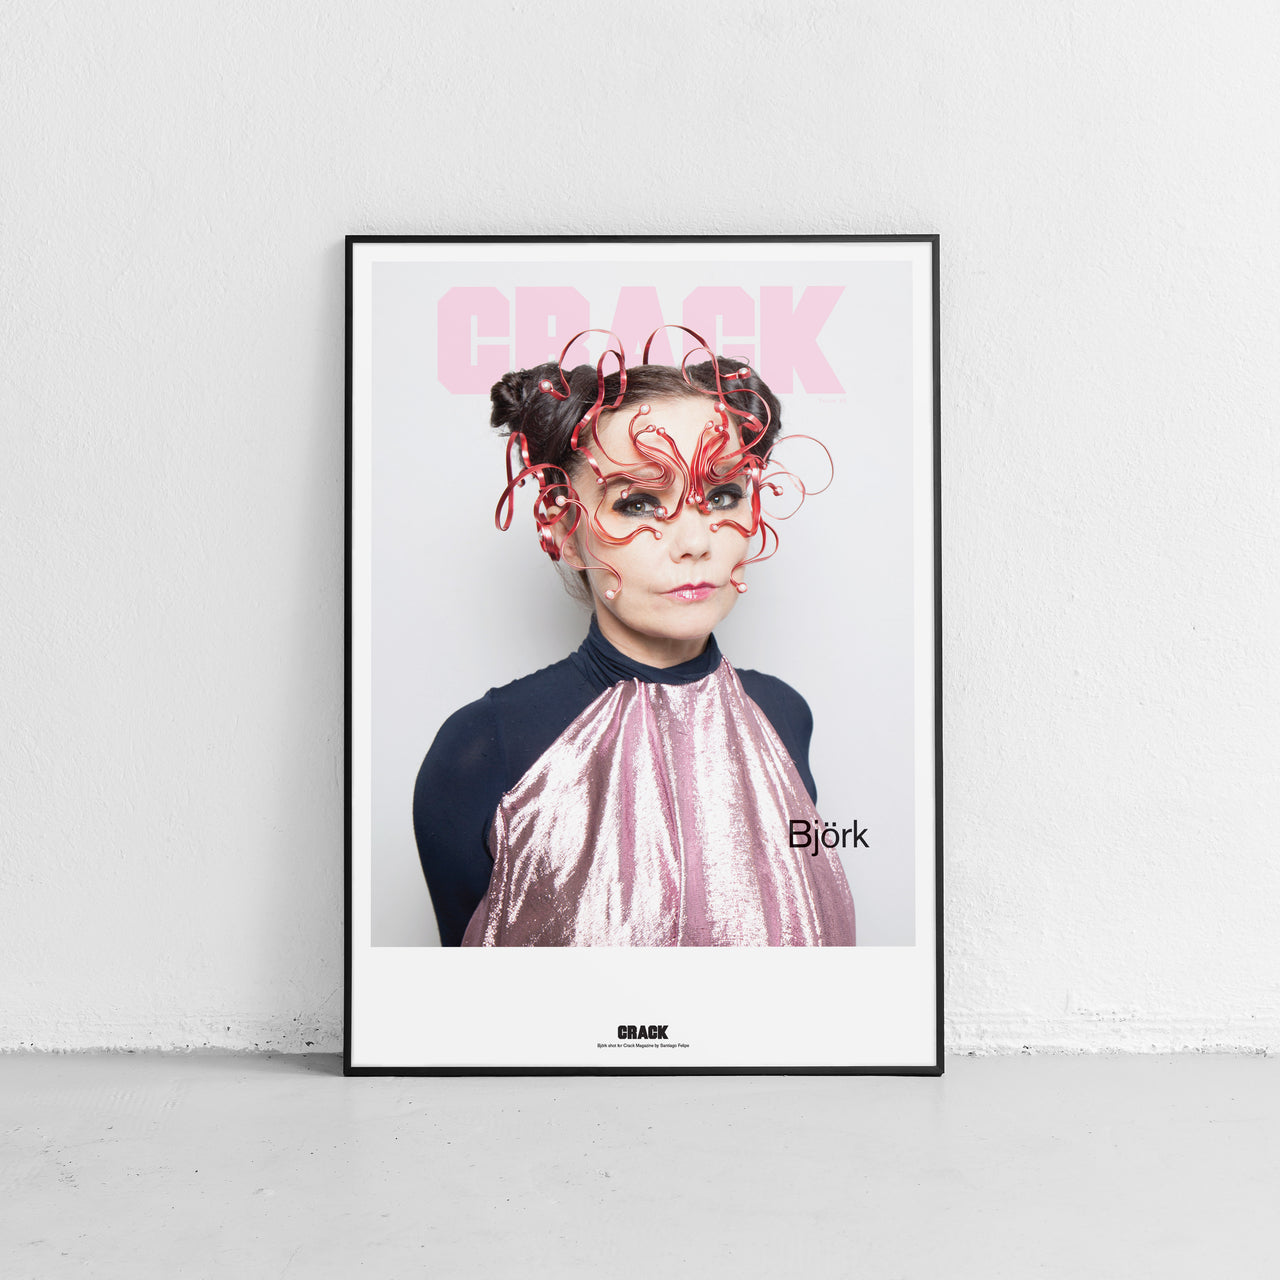 Issue 68: Björk Cover Print